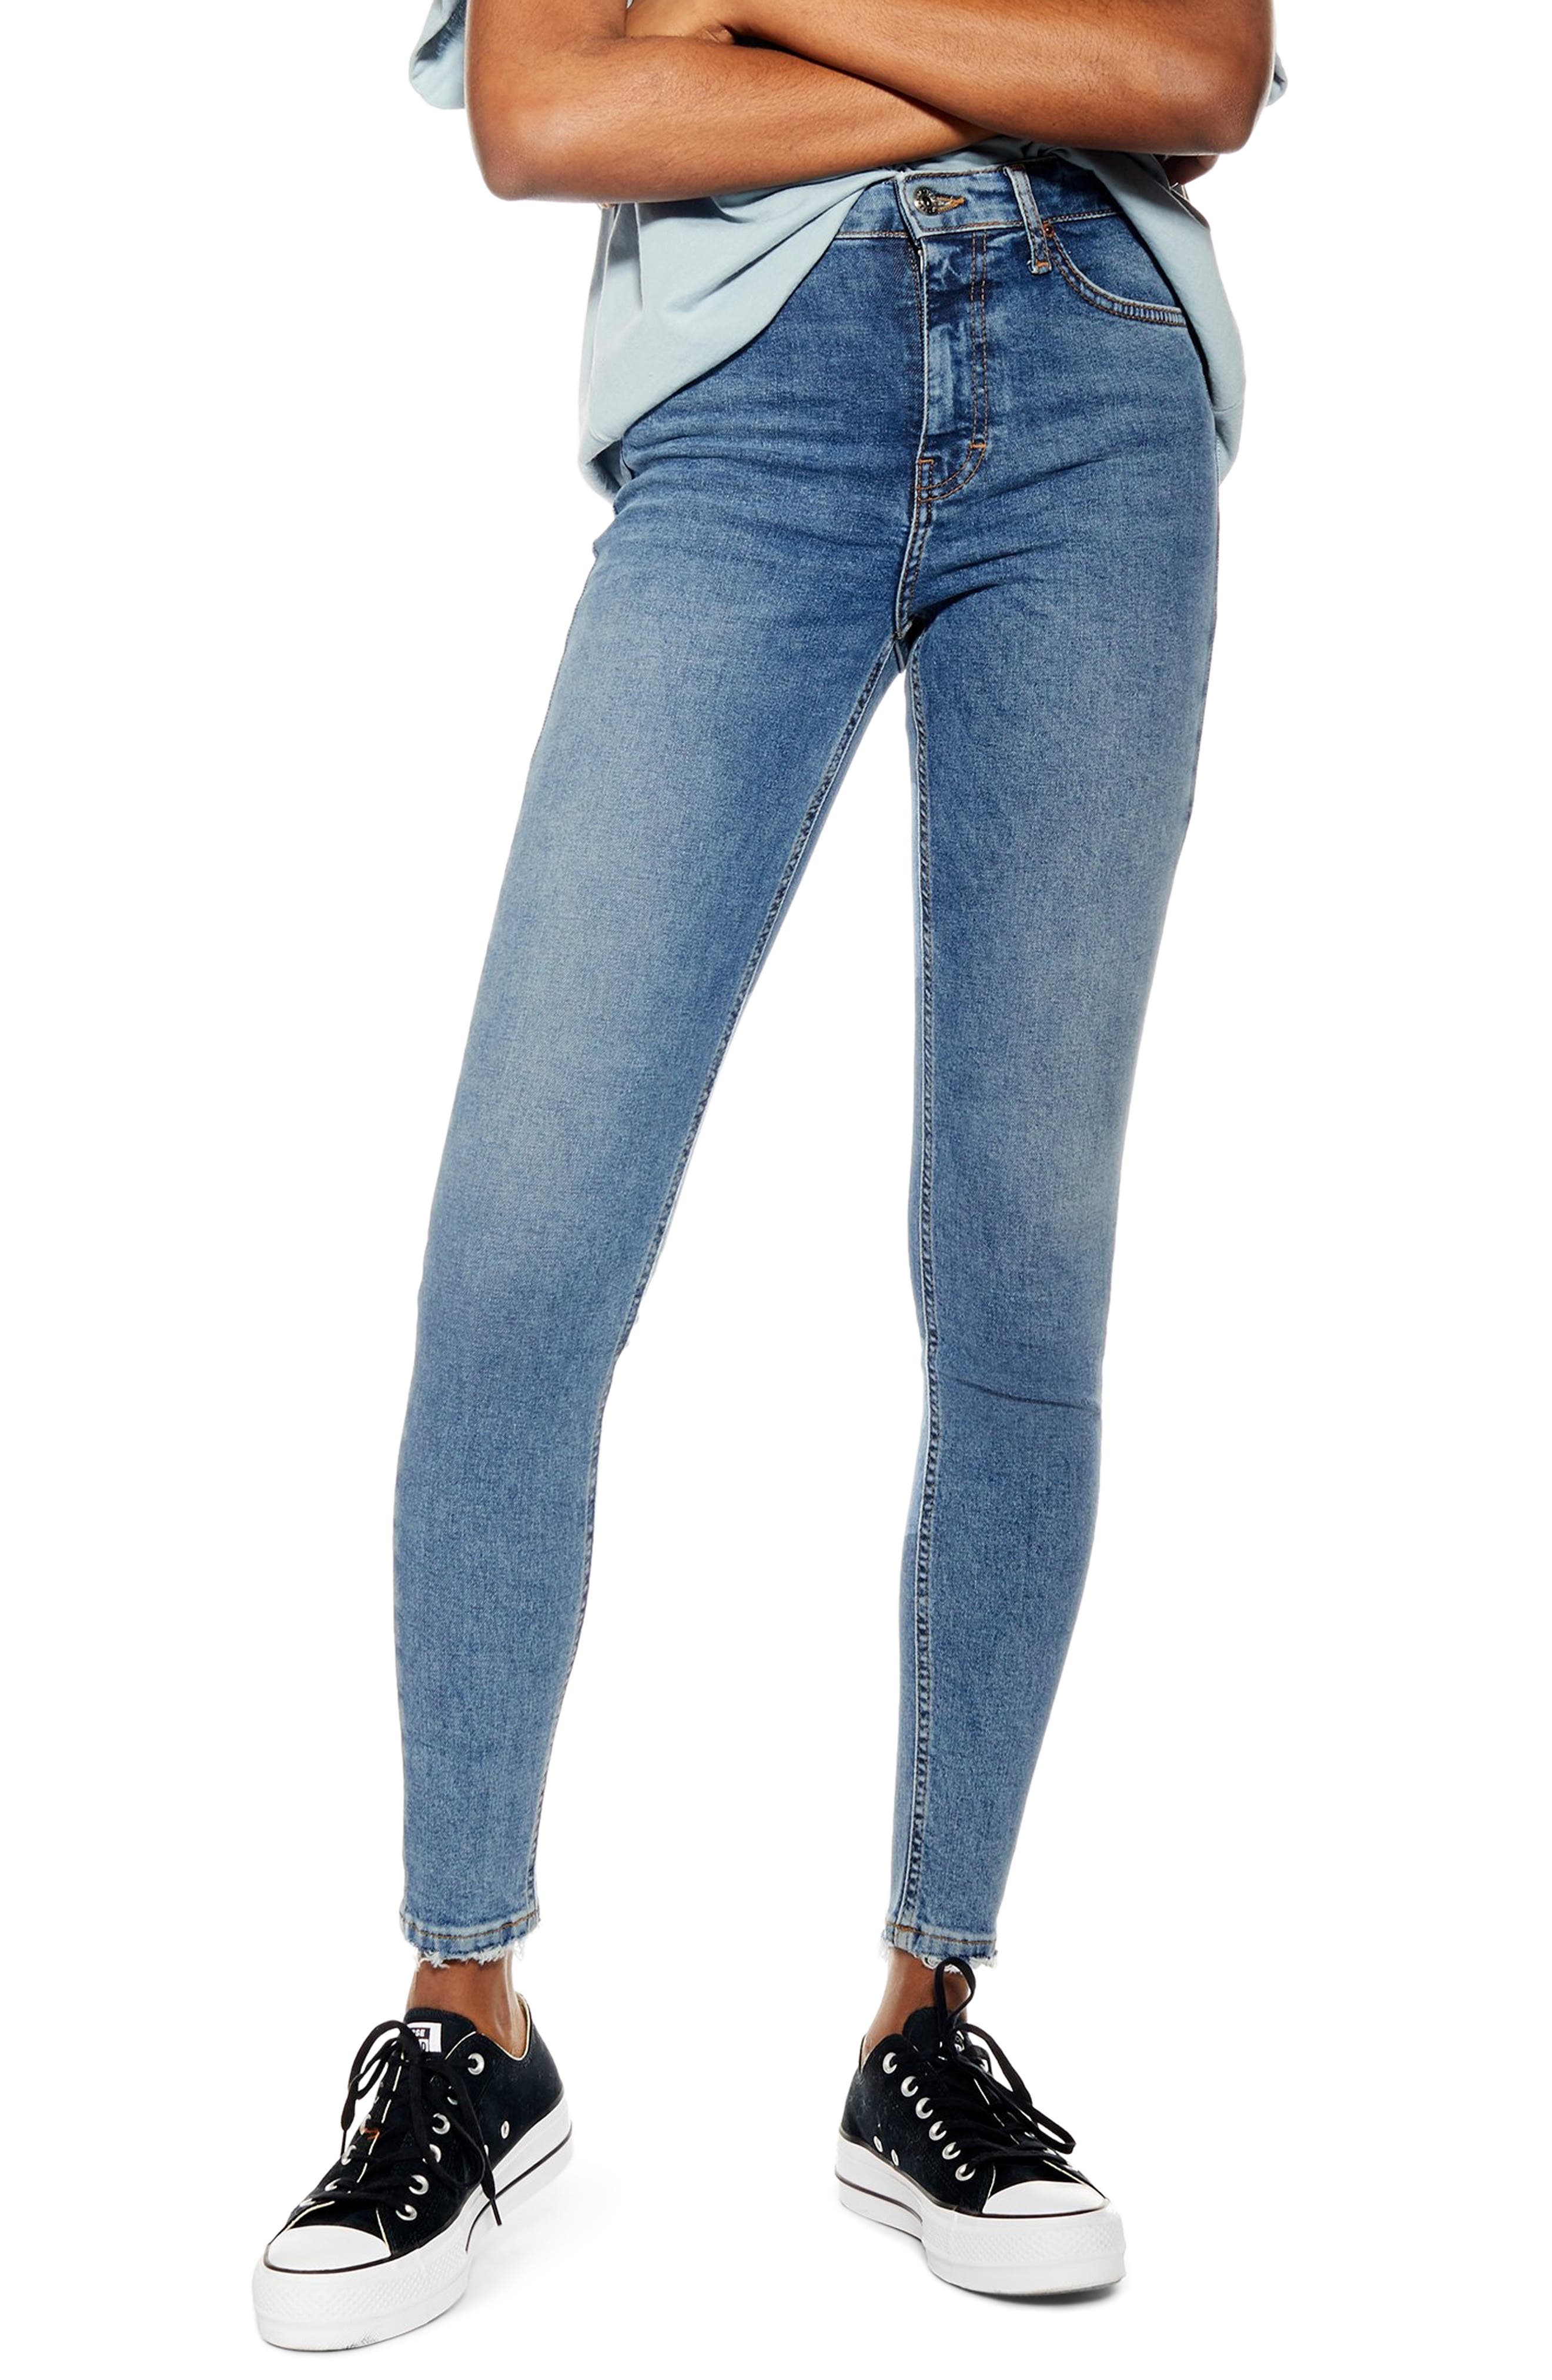 topshop jeans sale